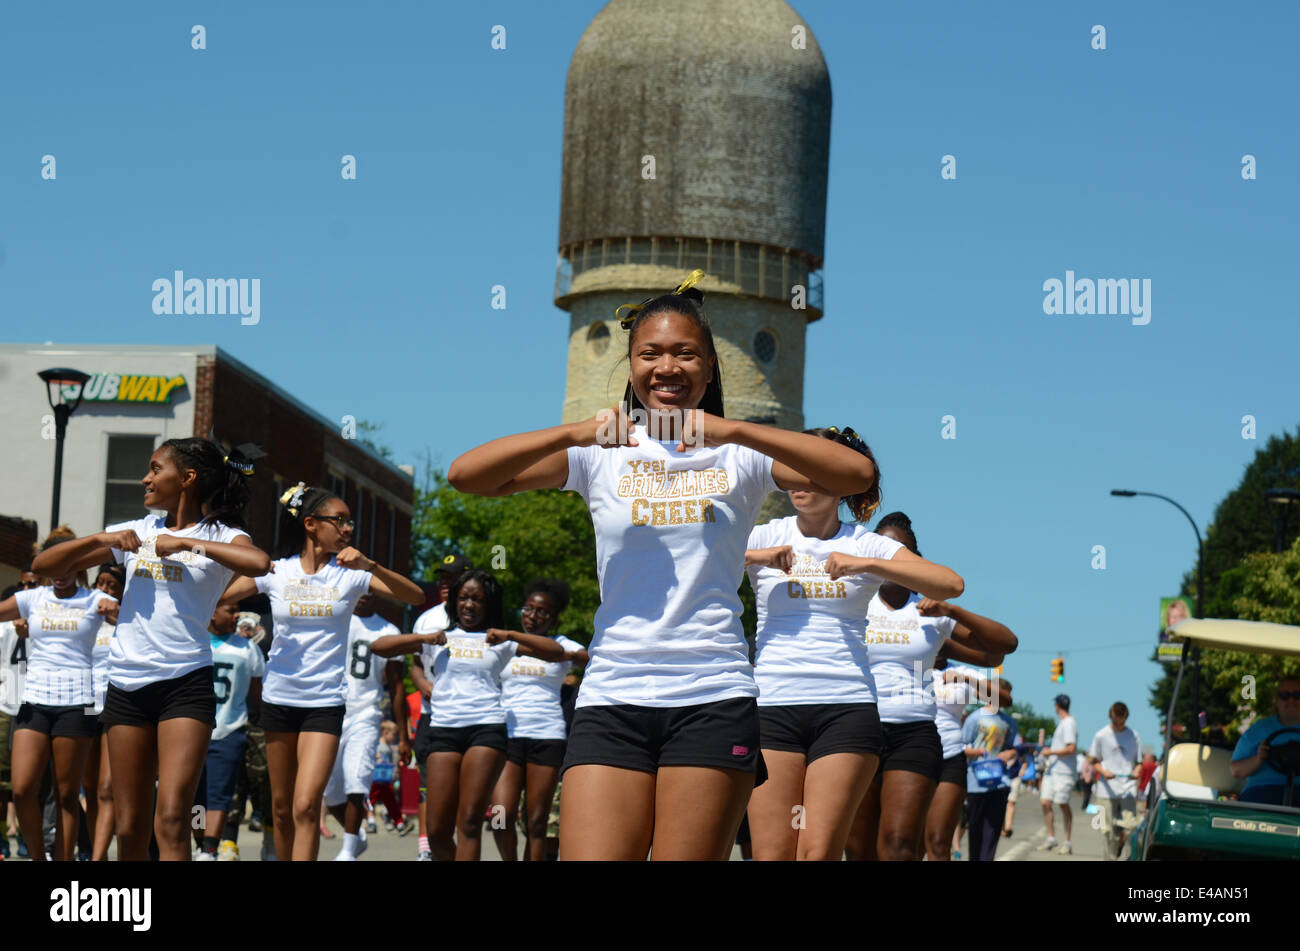 YPSILANTI, MI - 4 juillet : Ypsilanti high school applaudir les membres de l'équipe à la 4e de juillet parade le 4 juillet 2014 à Ypsilanti, MI. Banque D'Images